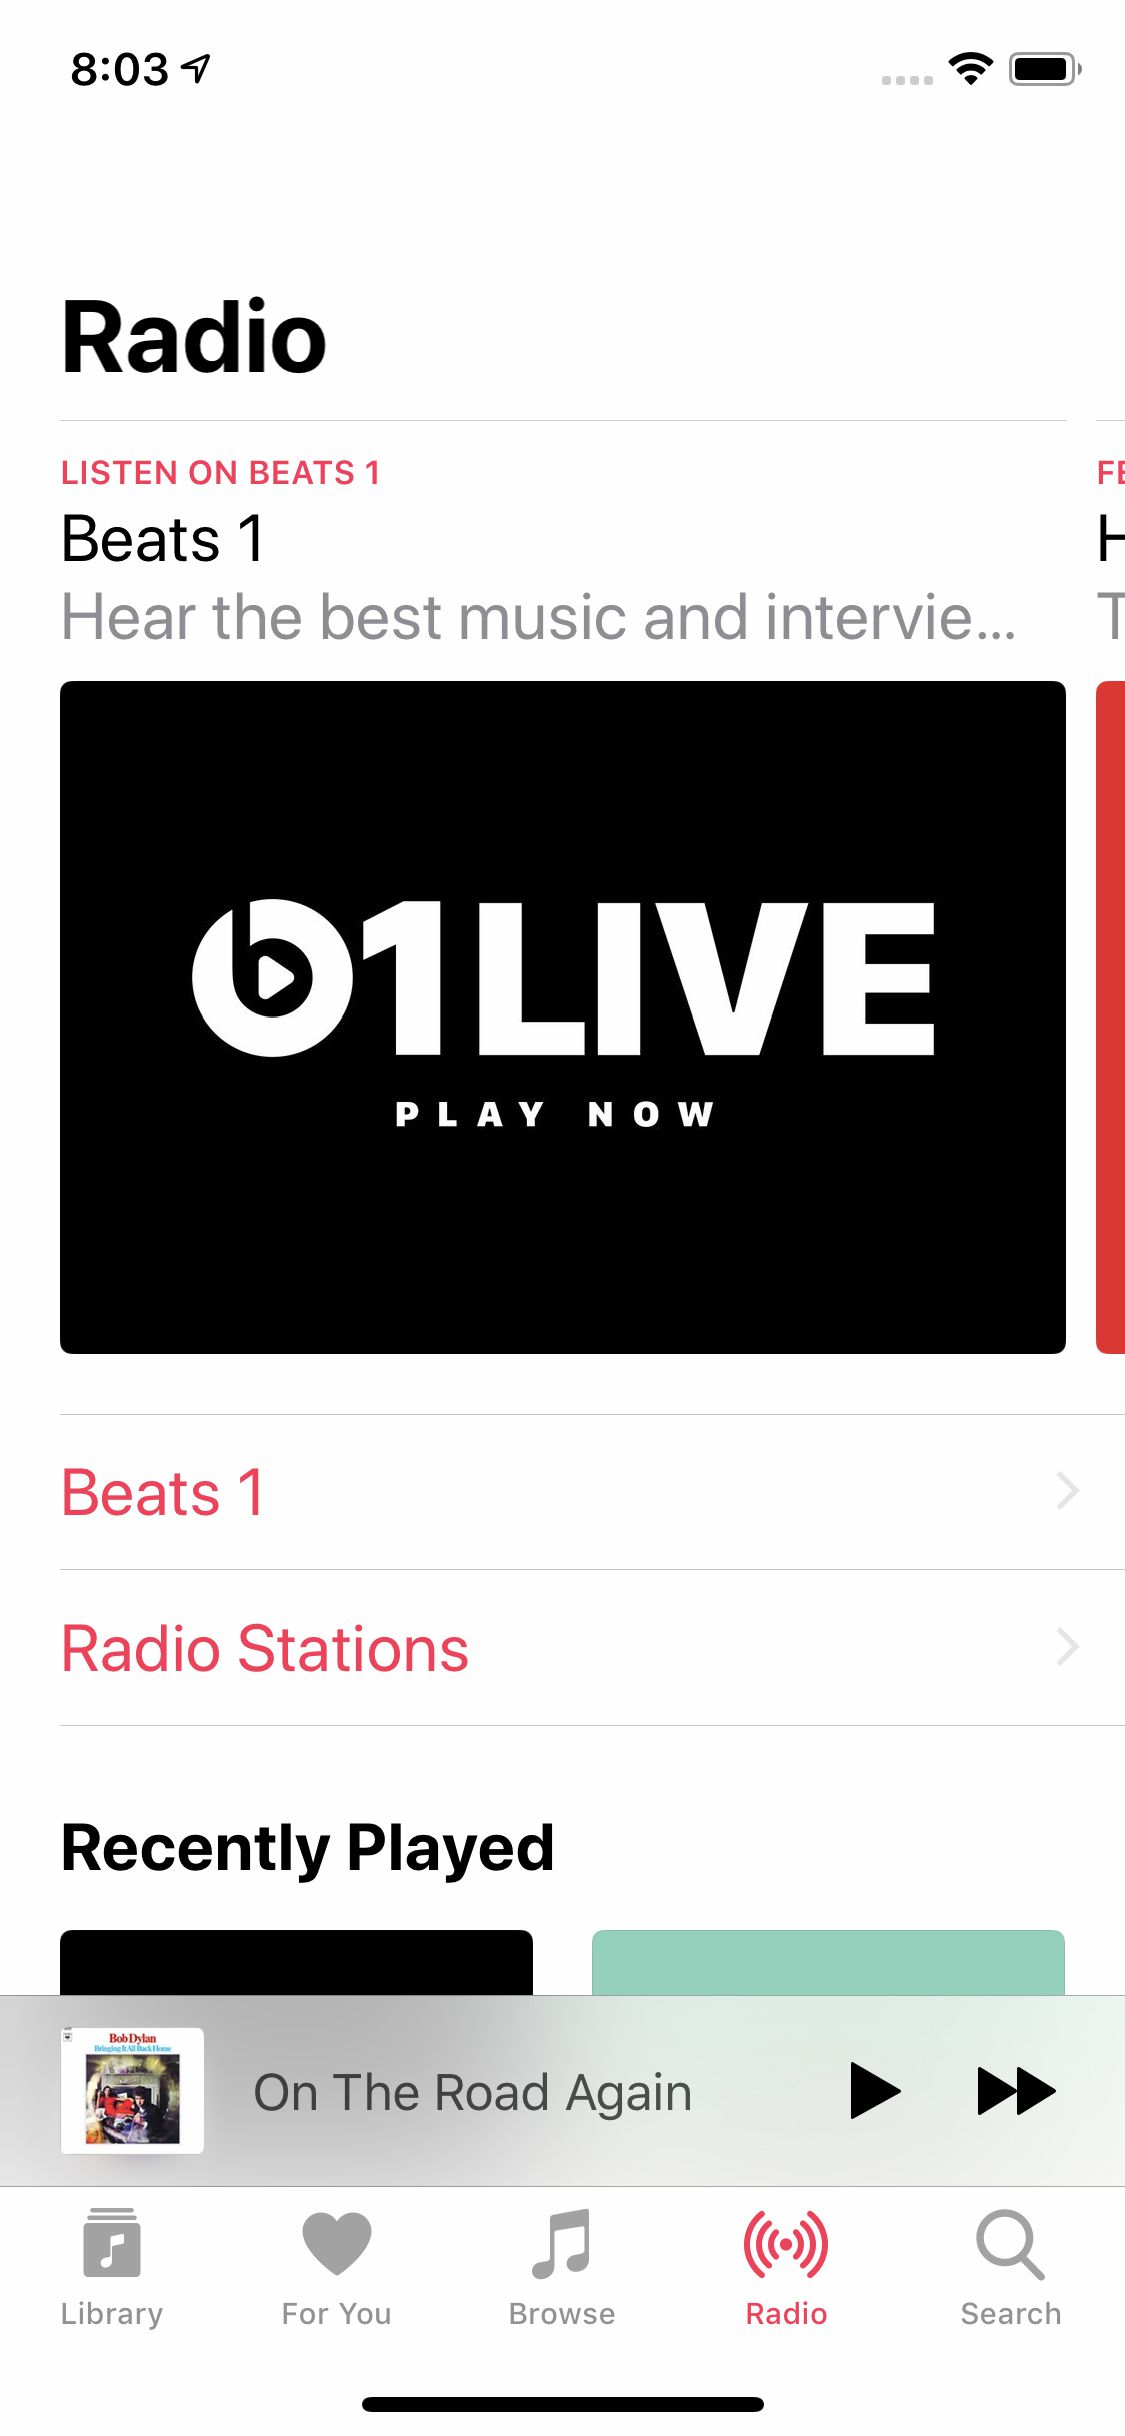 Kuvakaappaus iPhonen Apple Musicin radioasetuksista